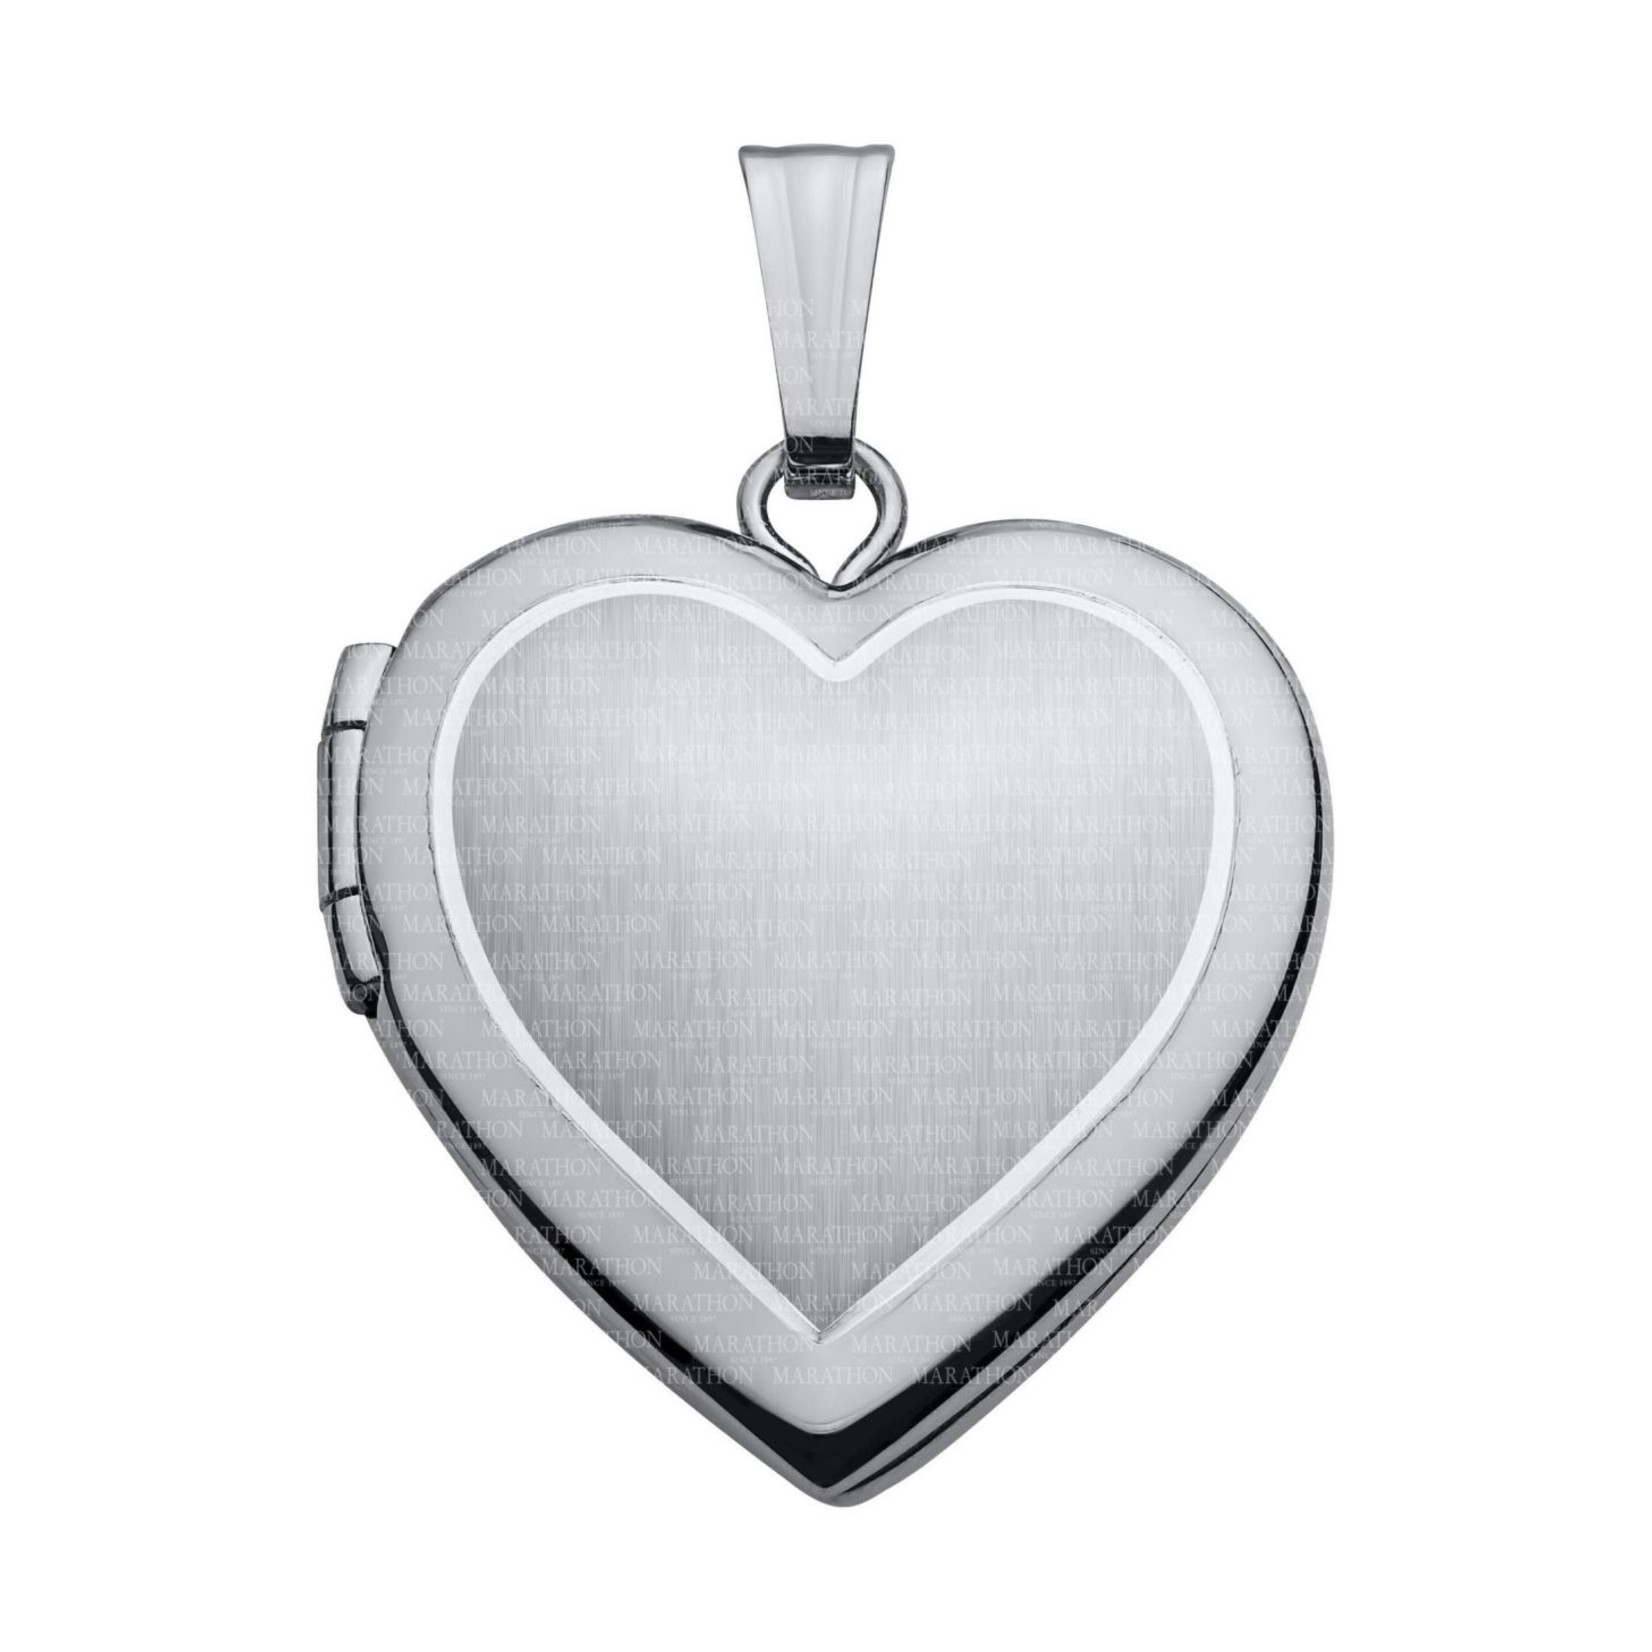 MARAKRAFT MARKETING Sterling Silver Small Heart Shape Locket w/18" Chain